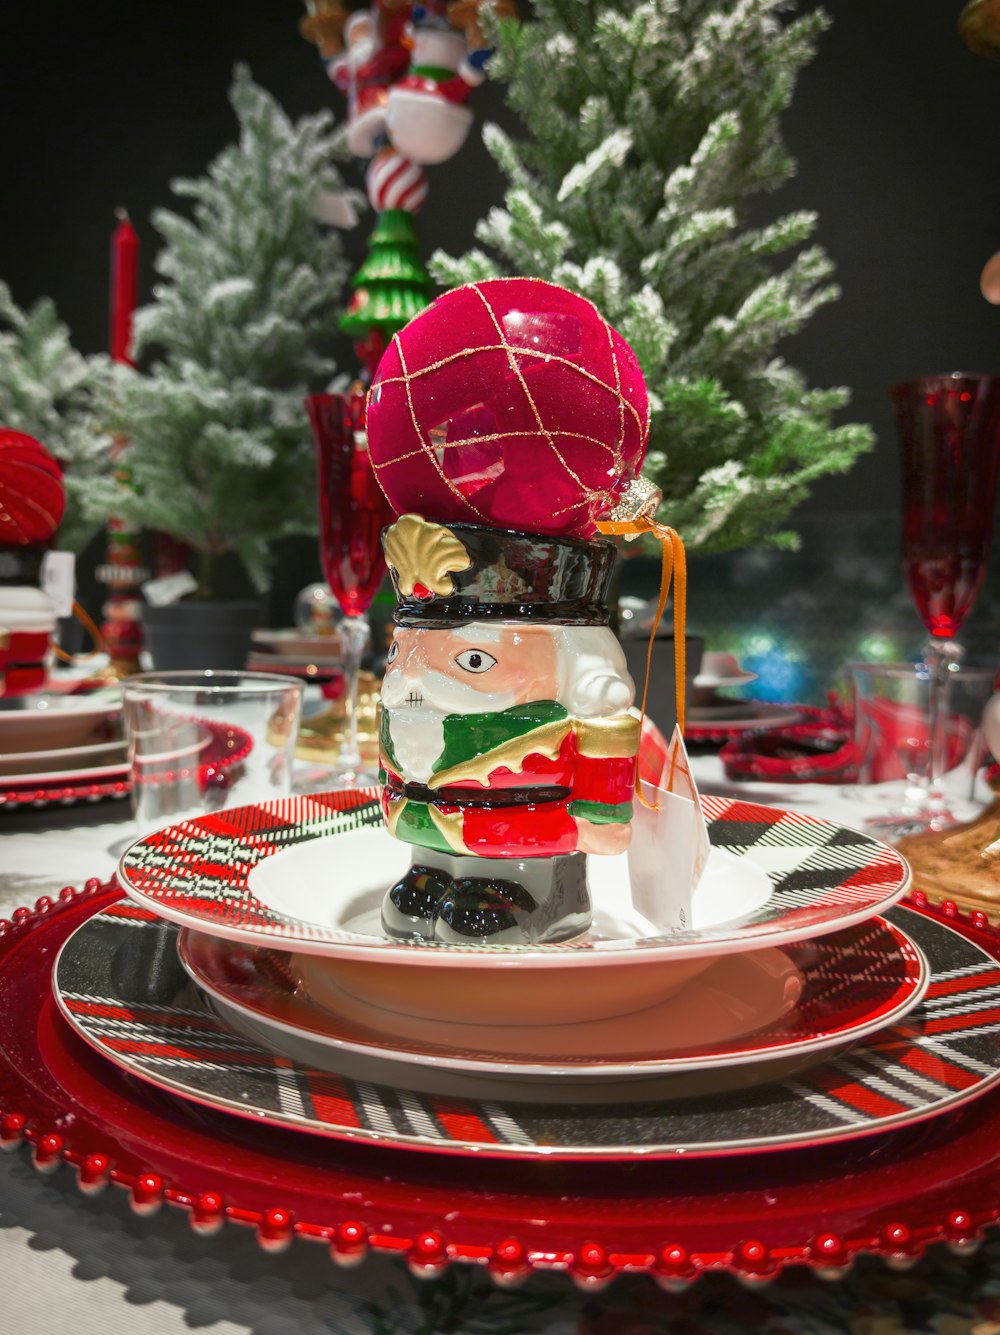 빨간색과 흰색 접시가 있는 크리스마스 테이블 세팅